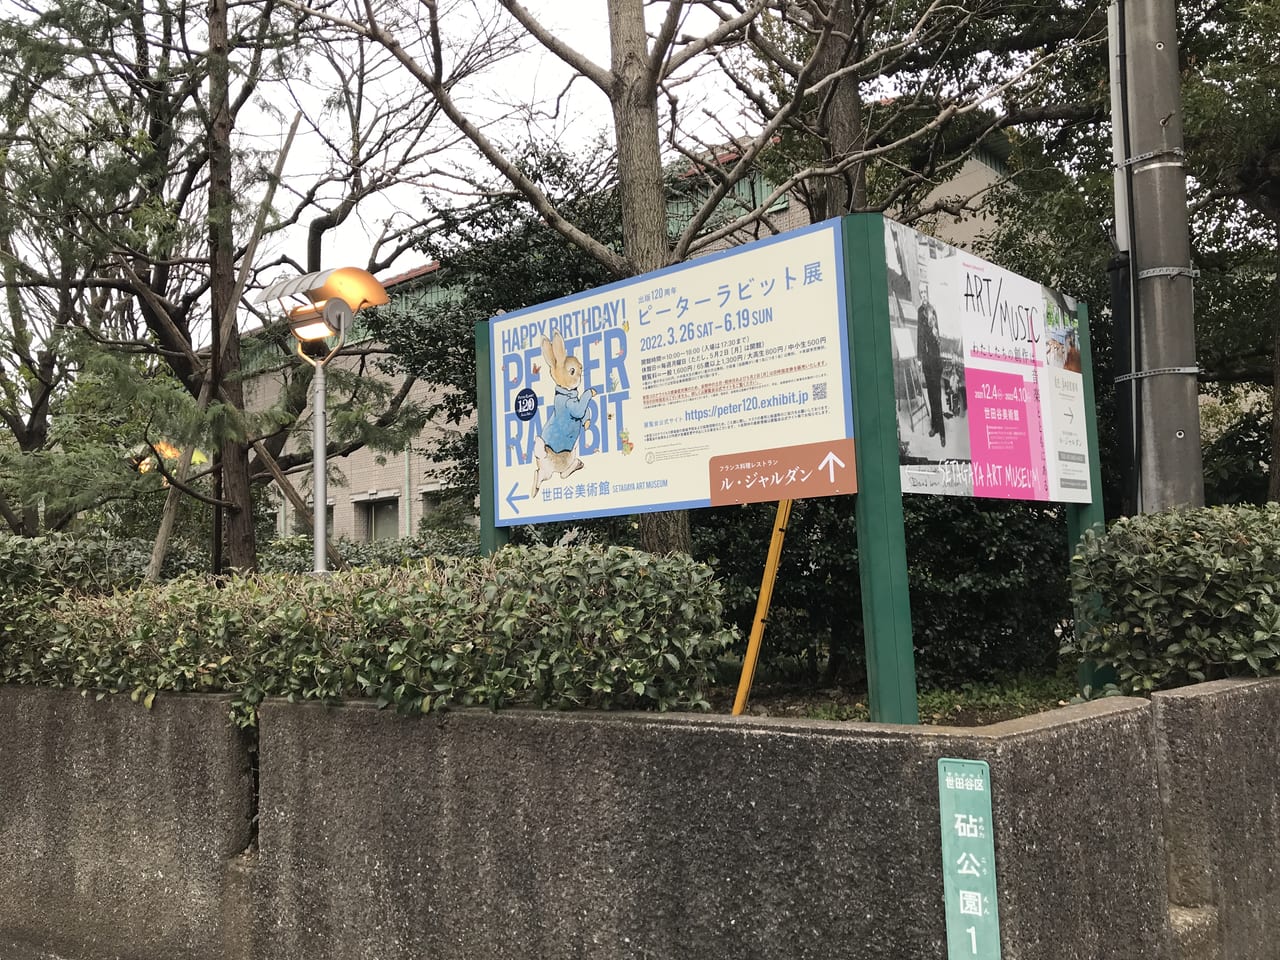 世田谷美術館で「出版120周年ピーターラビット展」が2022年3月26日〜6月19日まで開催です。